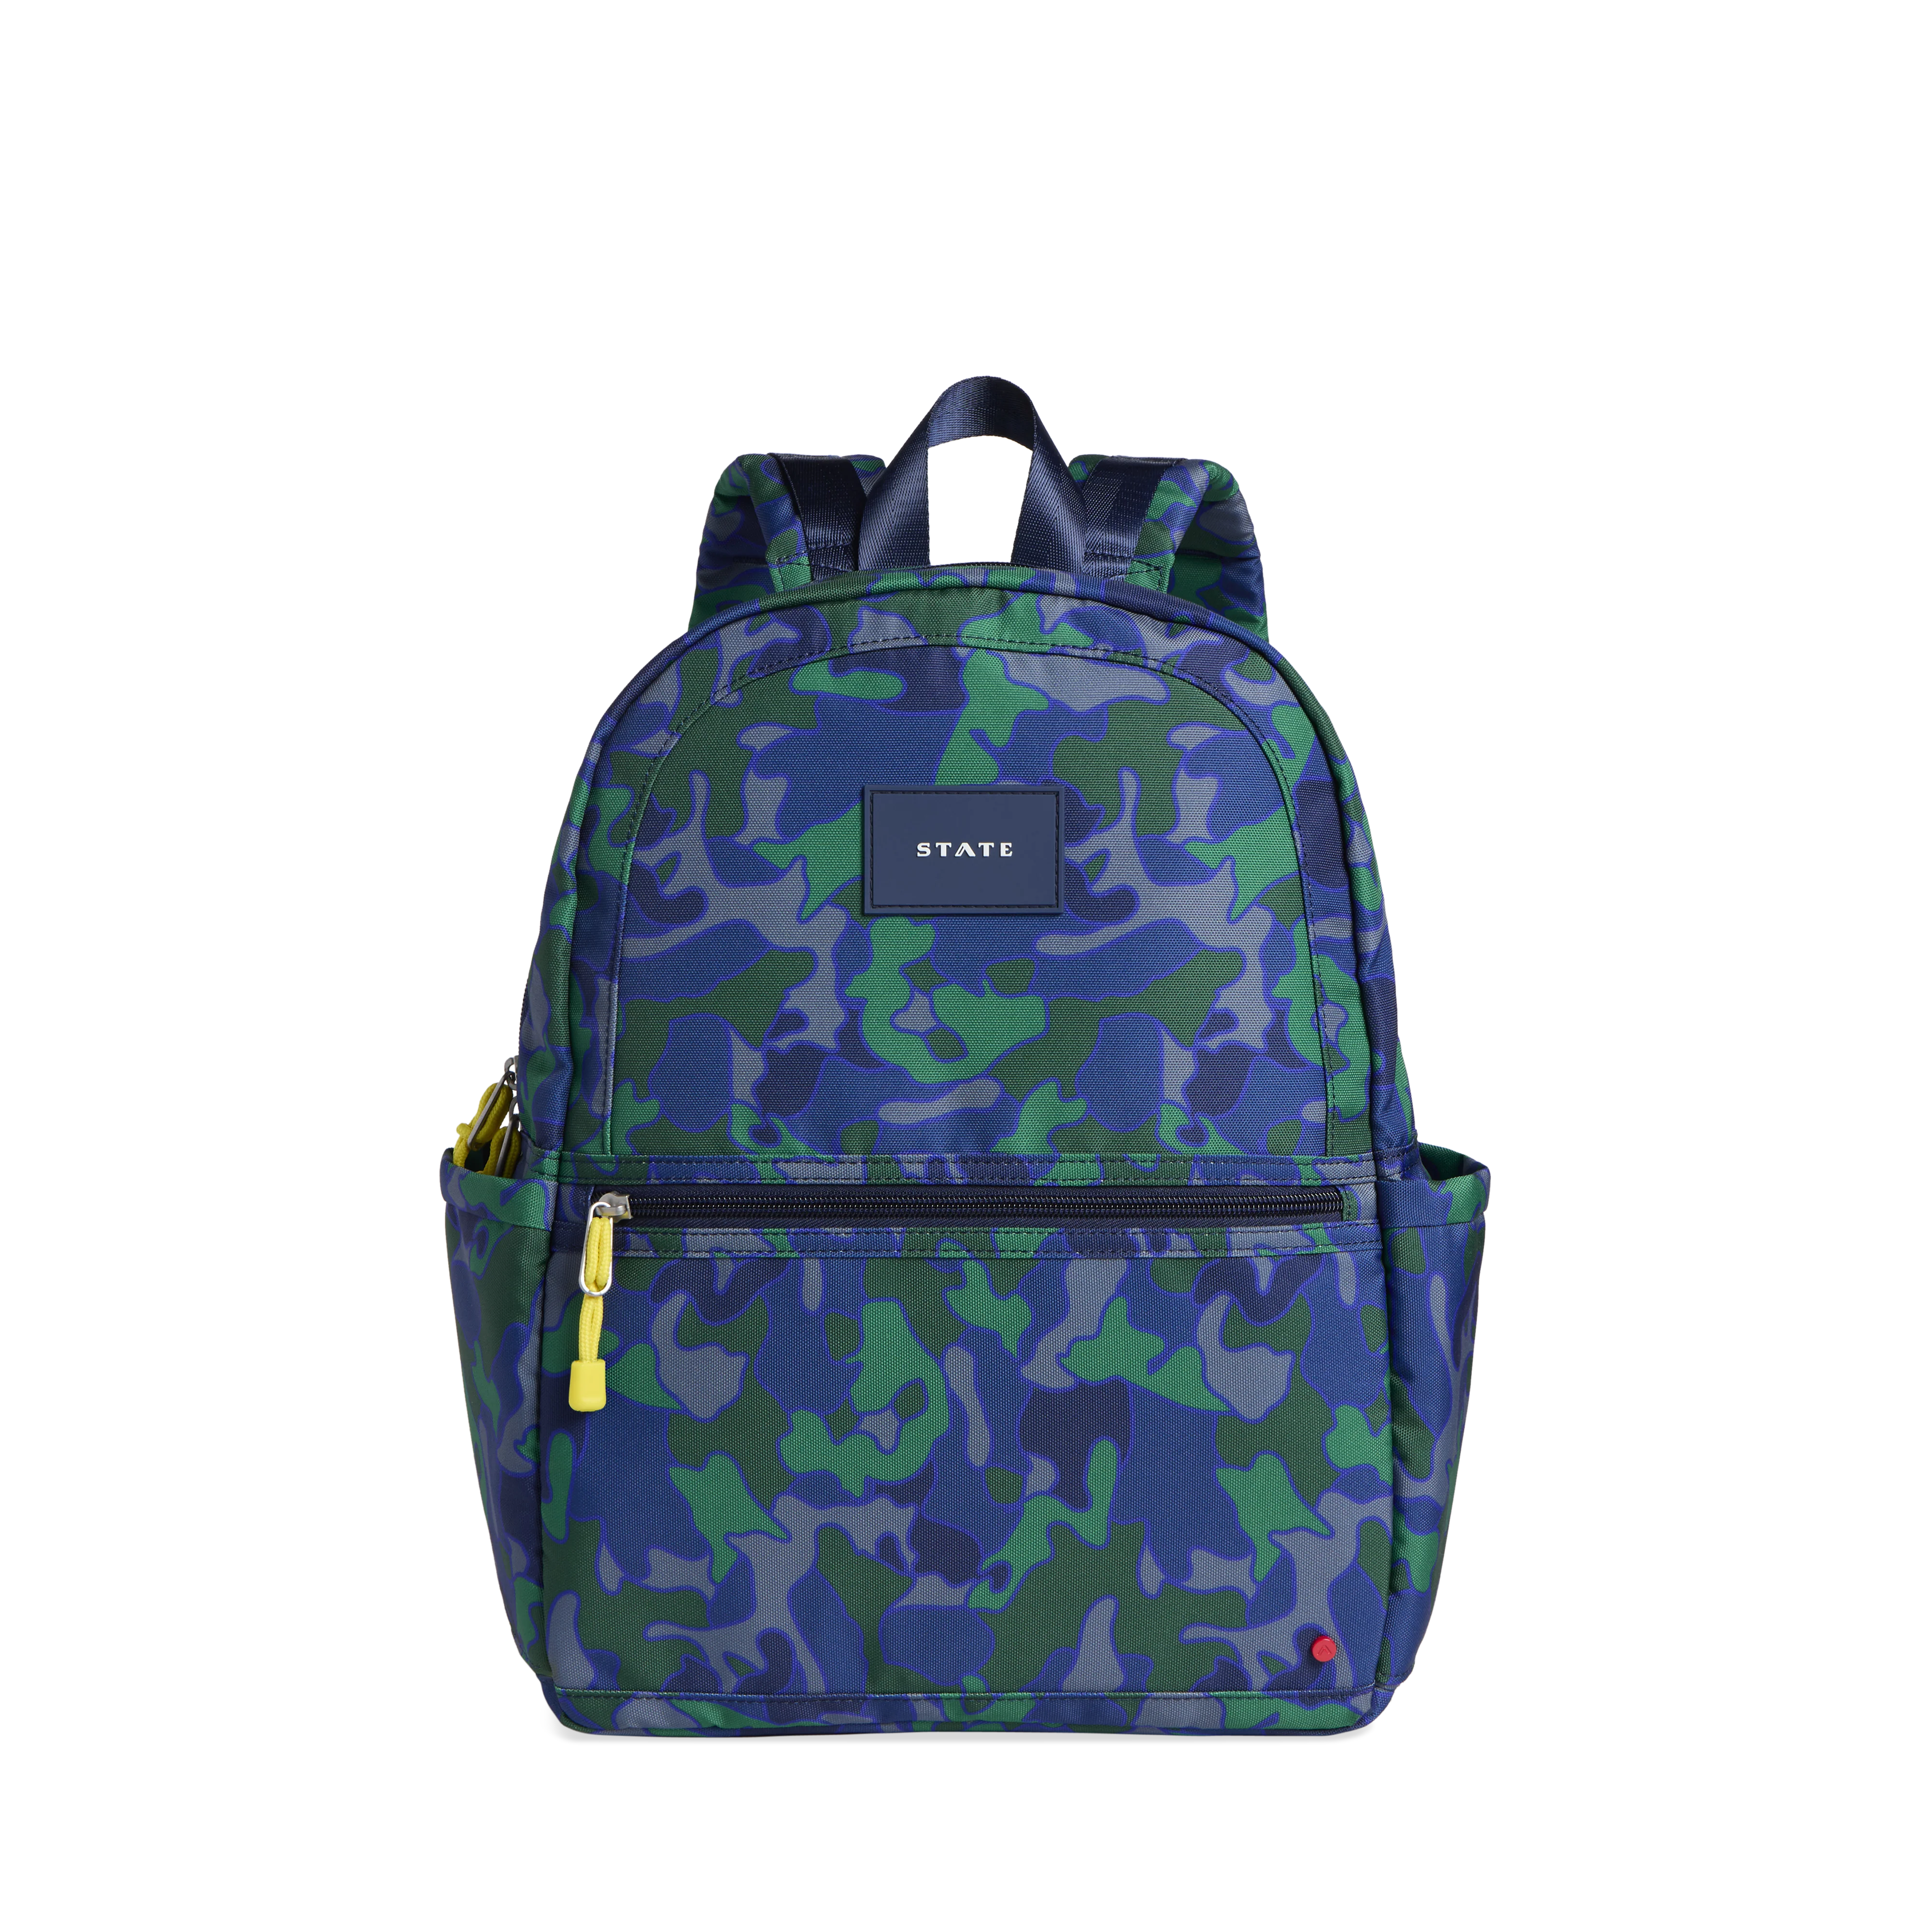 Kids Purple Camo Backpack